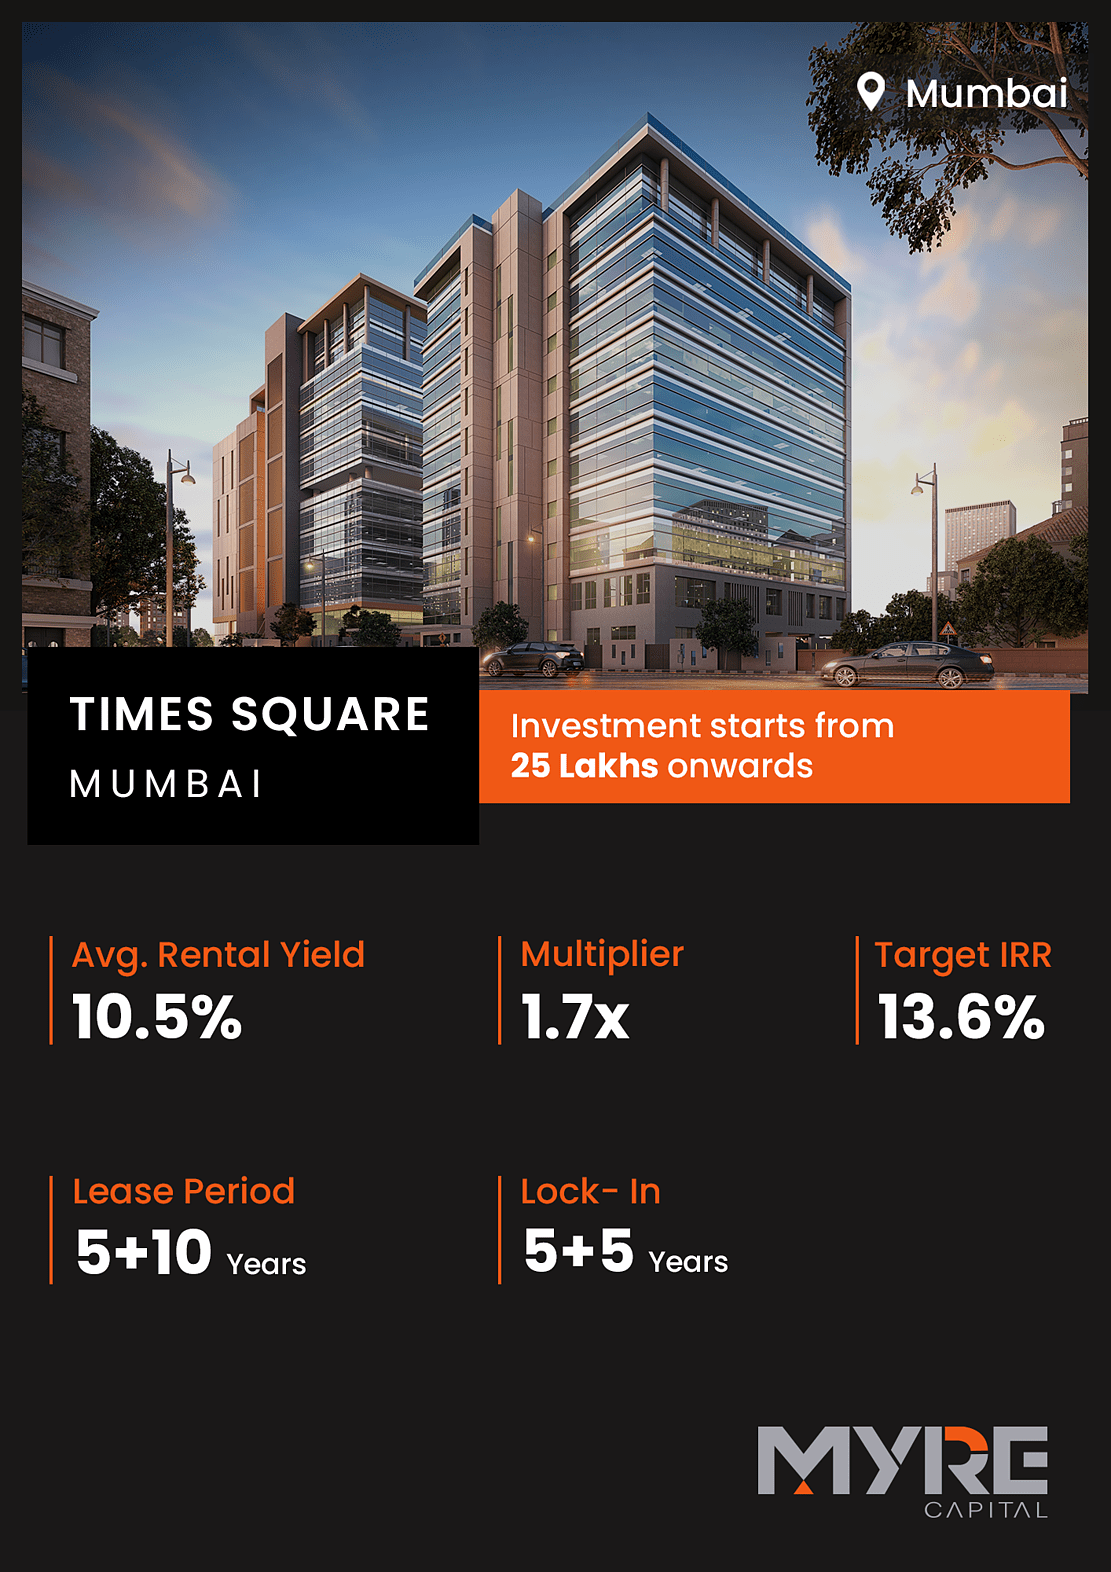 Myre Capital Mumbai Times Square